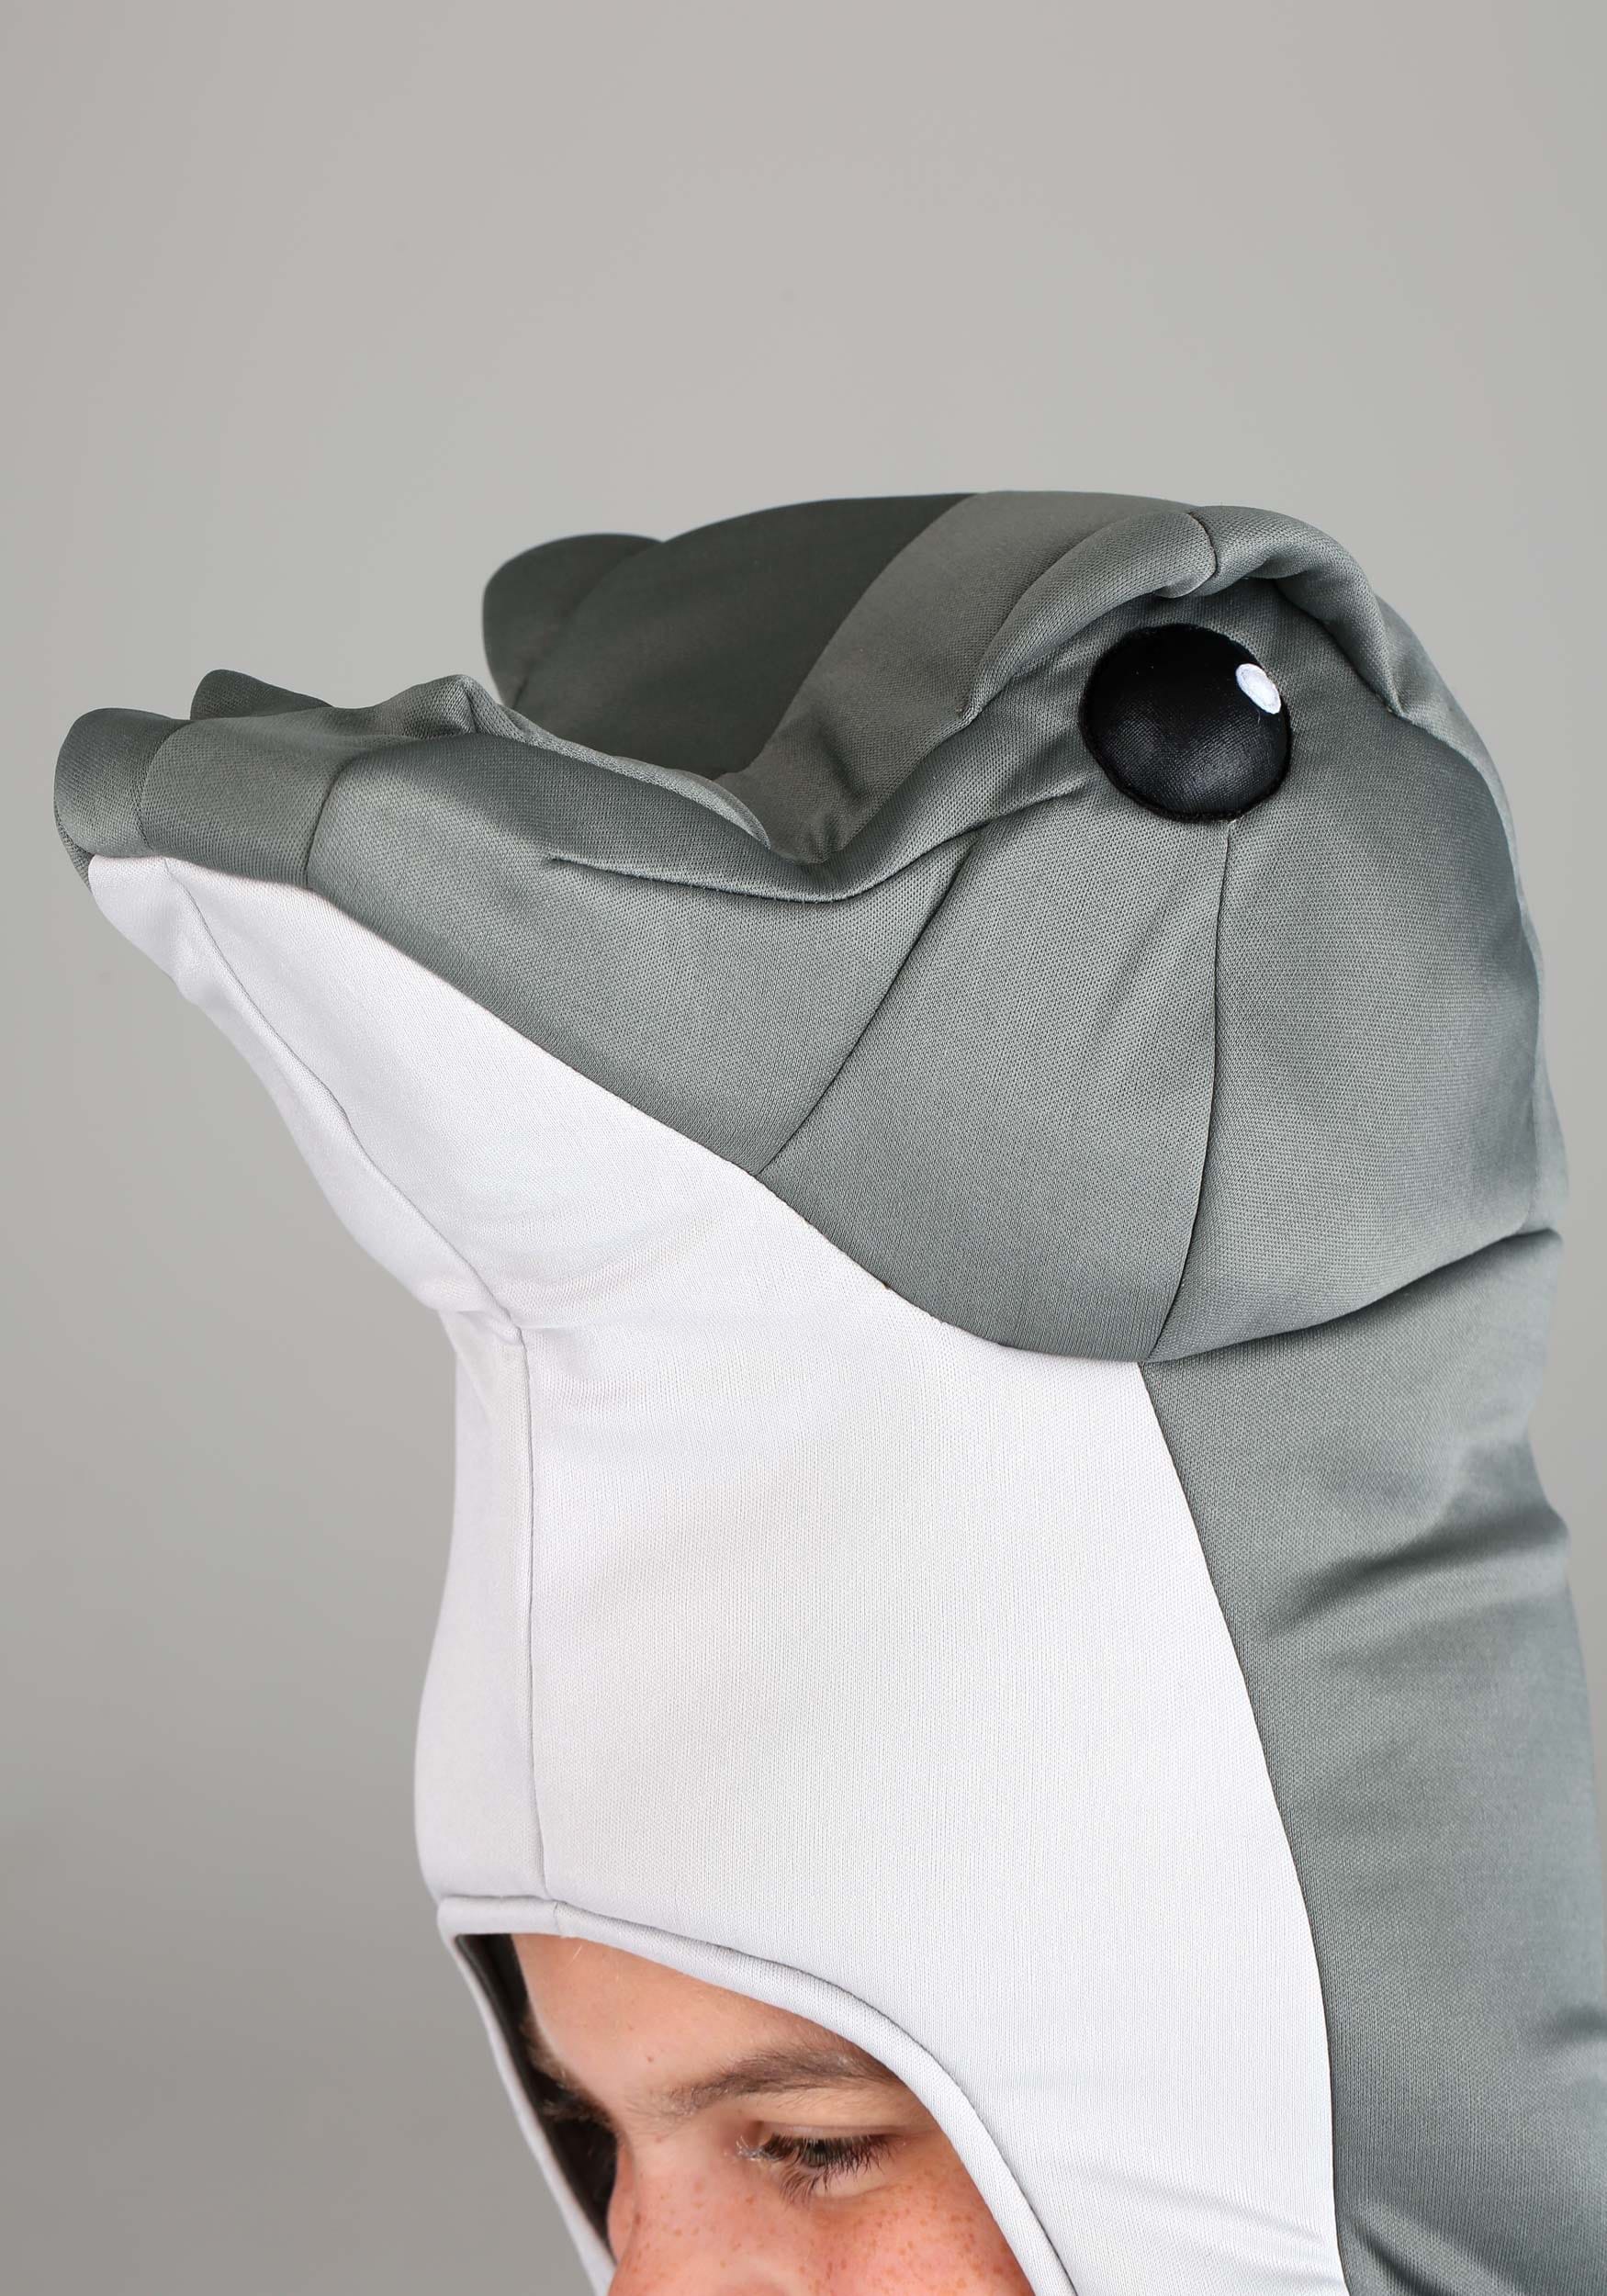 Loch Ness Monster Costume For Kids